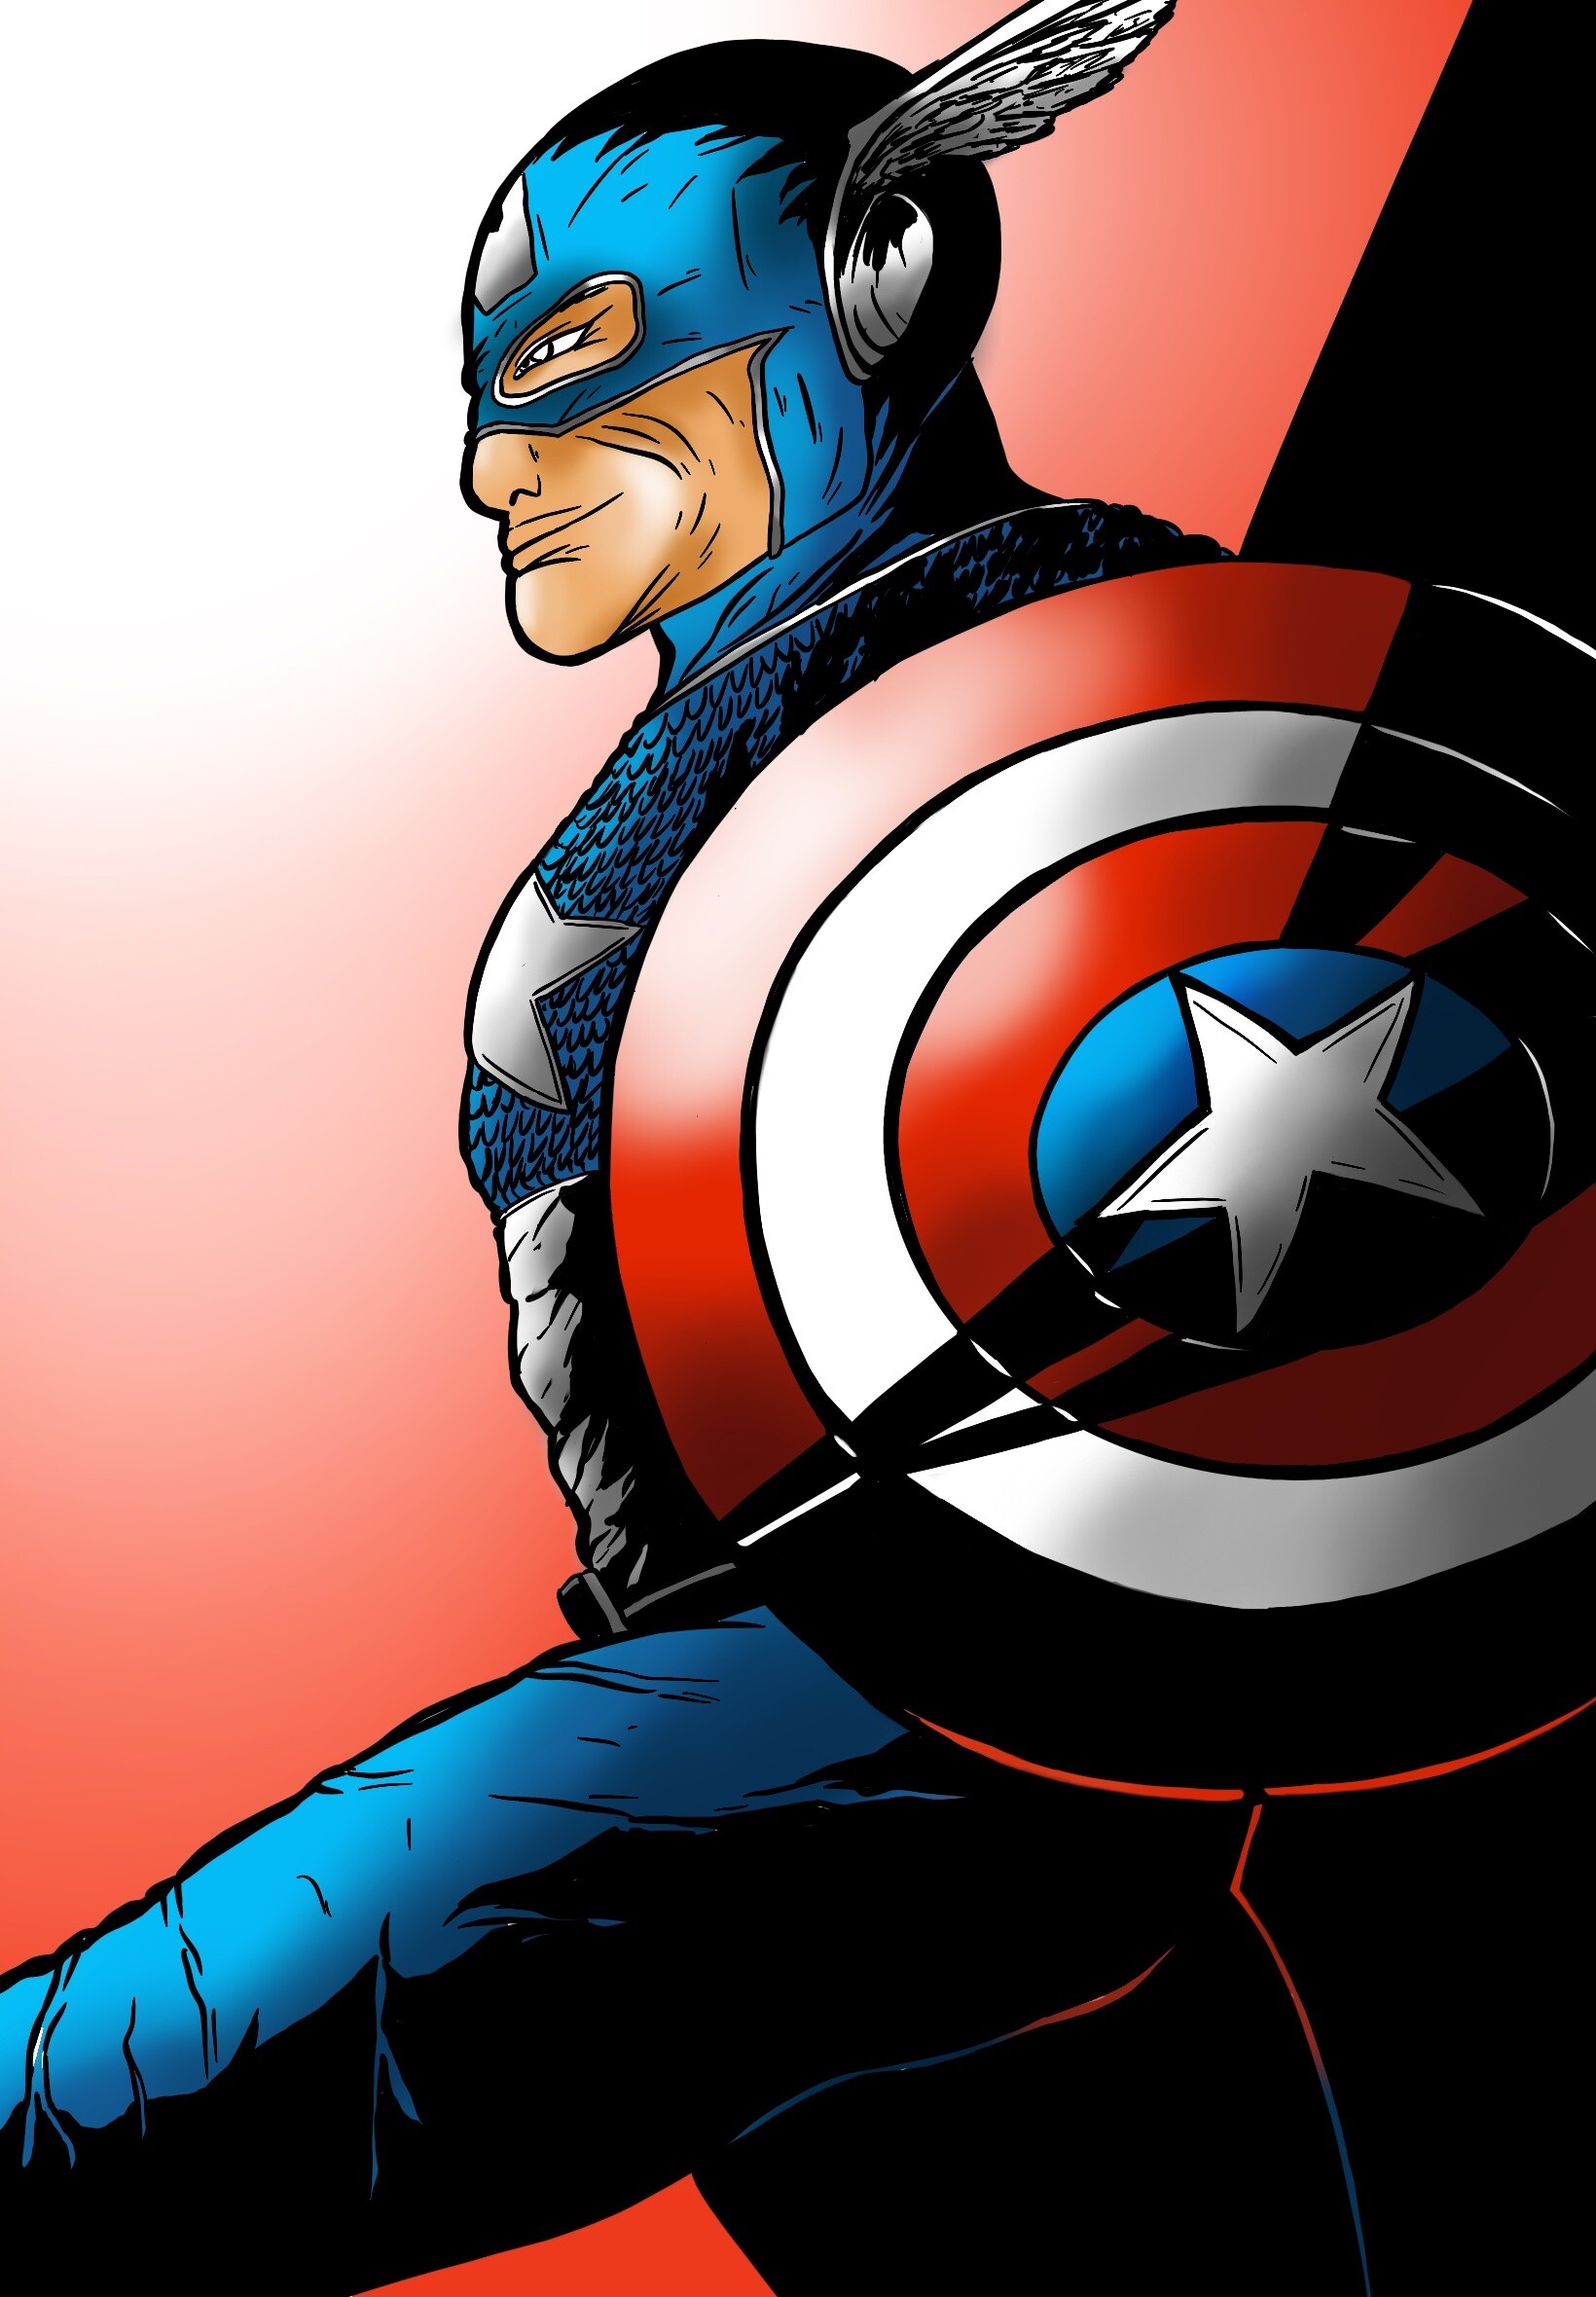 ArtStation - Marvel Comic Captain America art